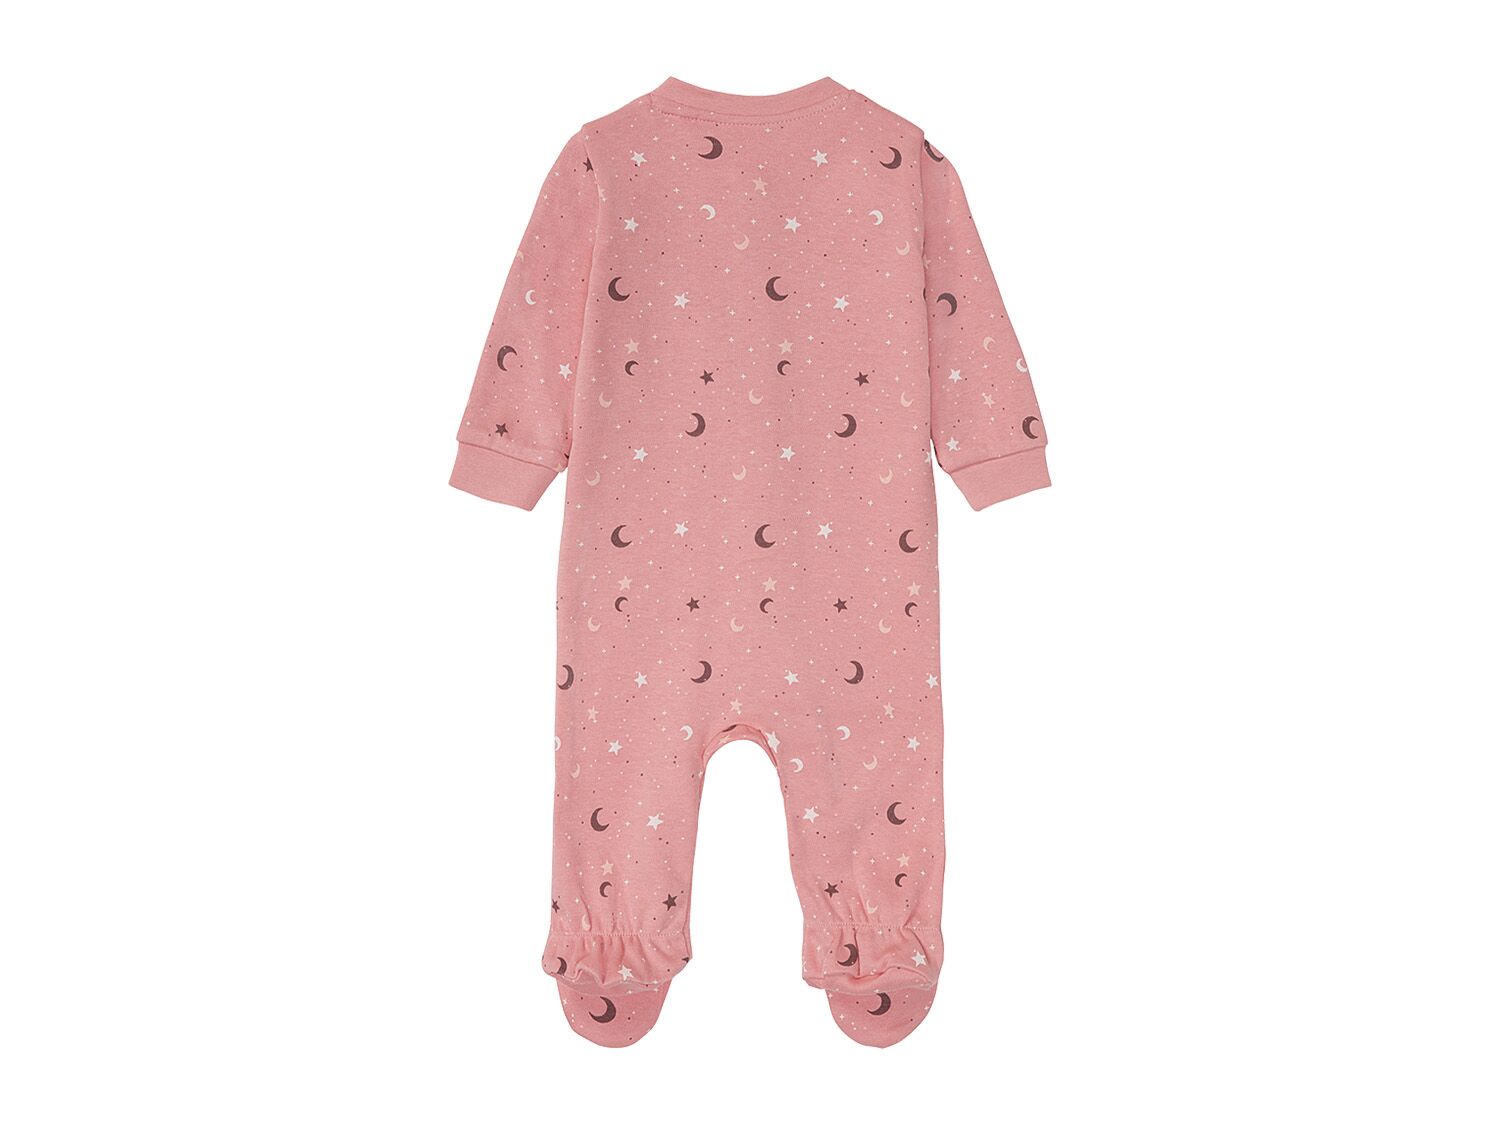 Pijama entero para bebé